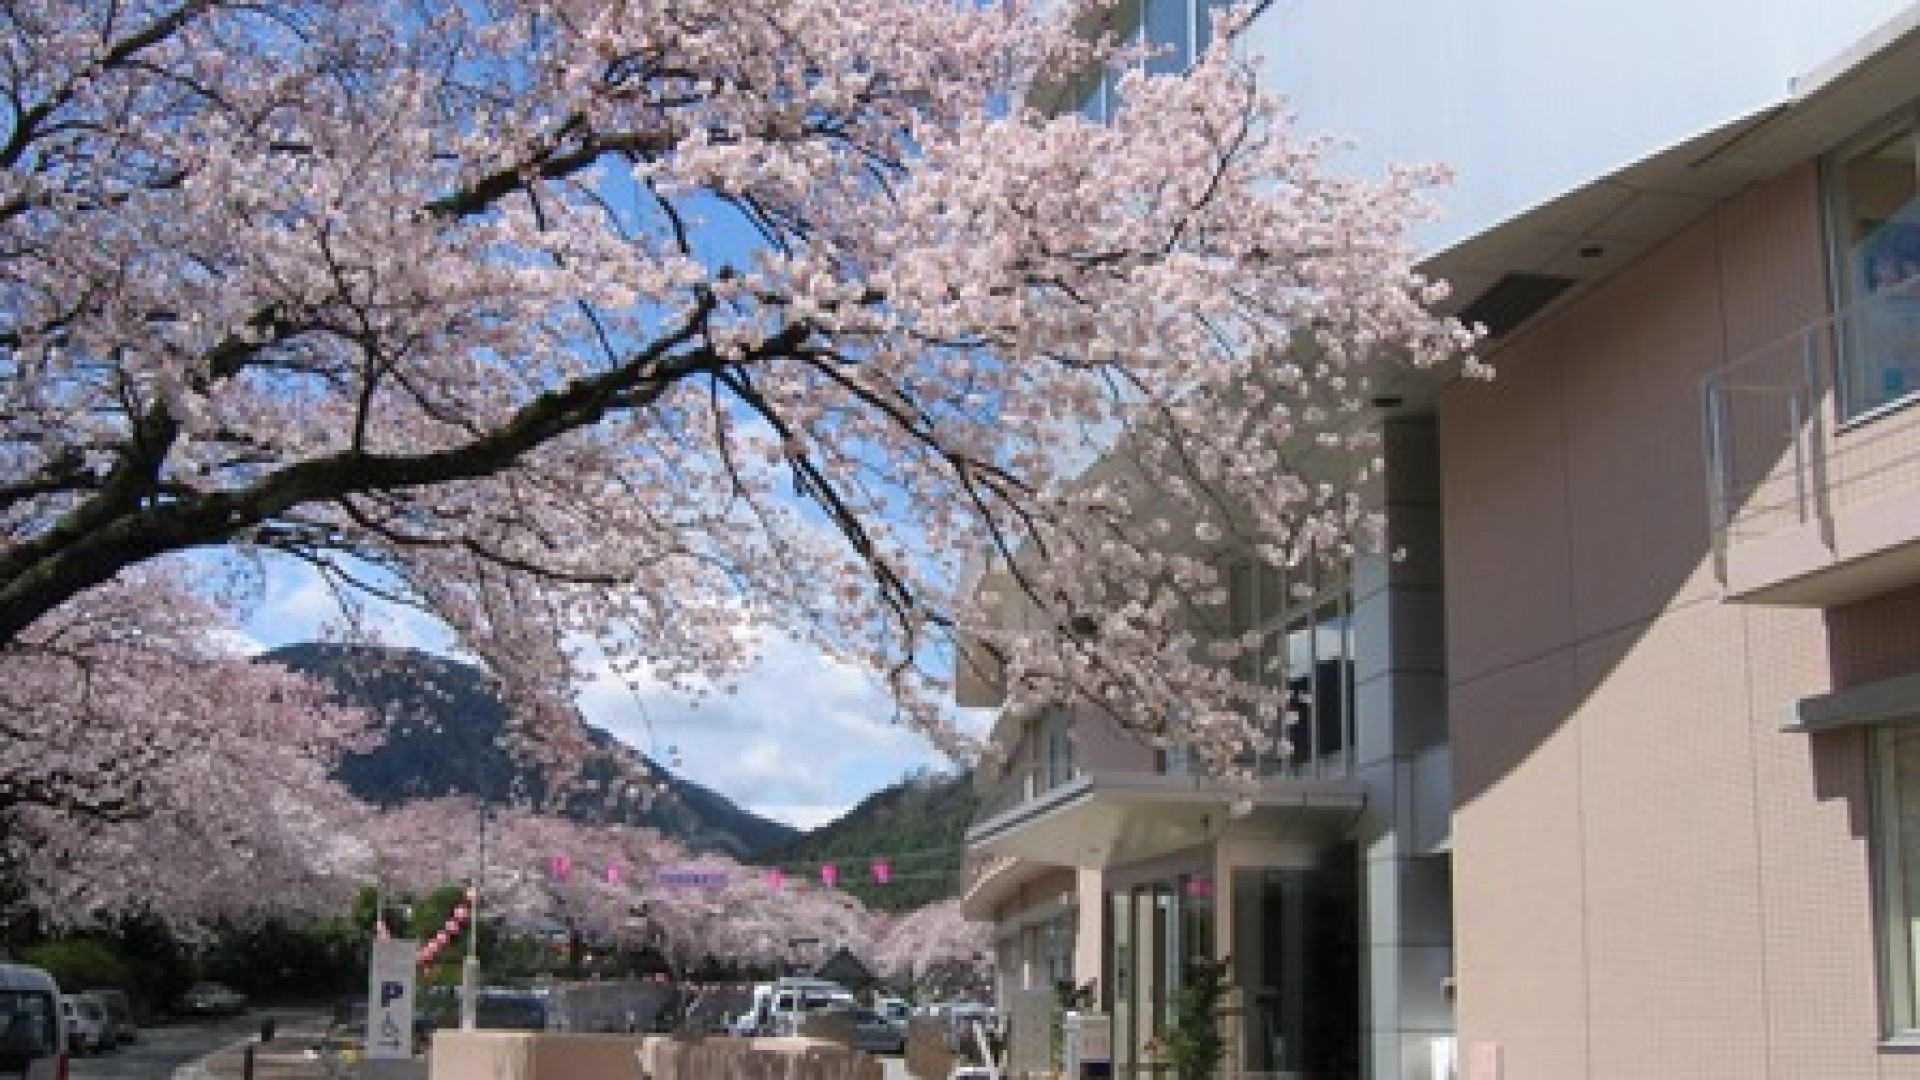 Centre de santé et de bien-être Yamakita machi - Cerisiers en fleurs